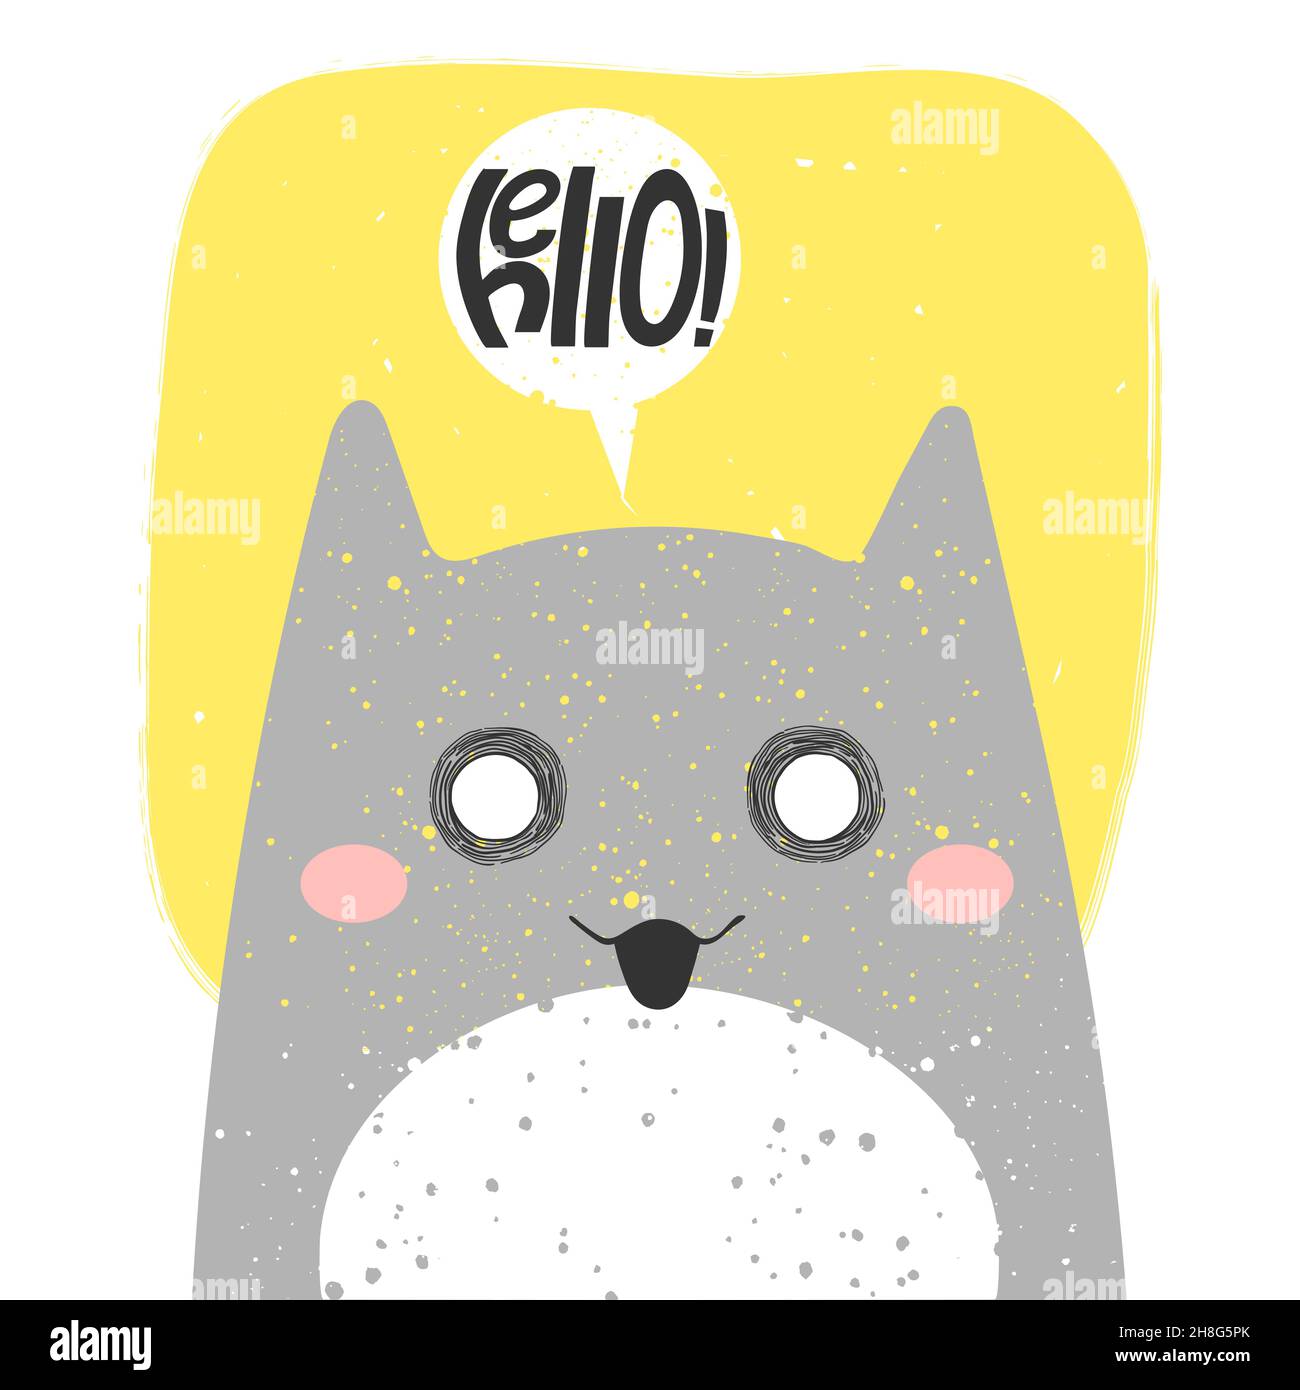 Niedliche lächelnde Katze mit Anime-Emotion und Rede schwatzen sagen Hallo. Hand gezeichnet Vektor Illustration von Kitty in flachen Cartoon-Design. Niedlicher Kinderclip Stock Vektor